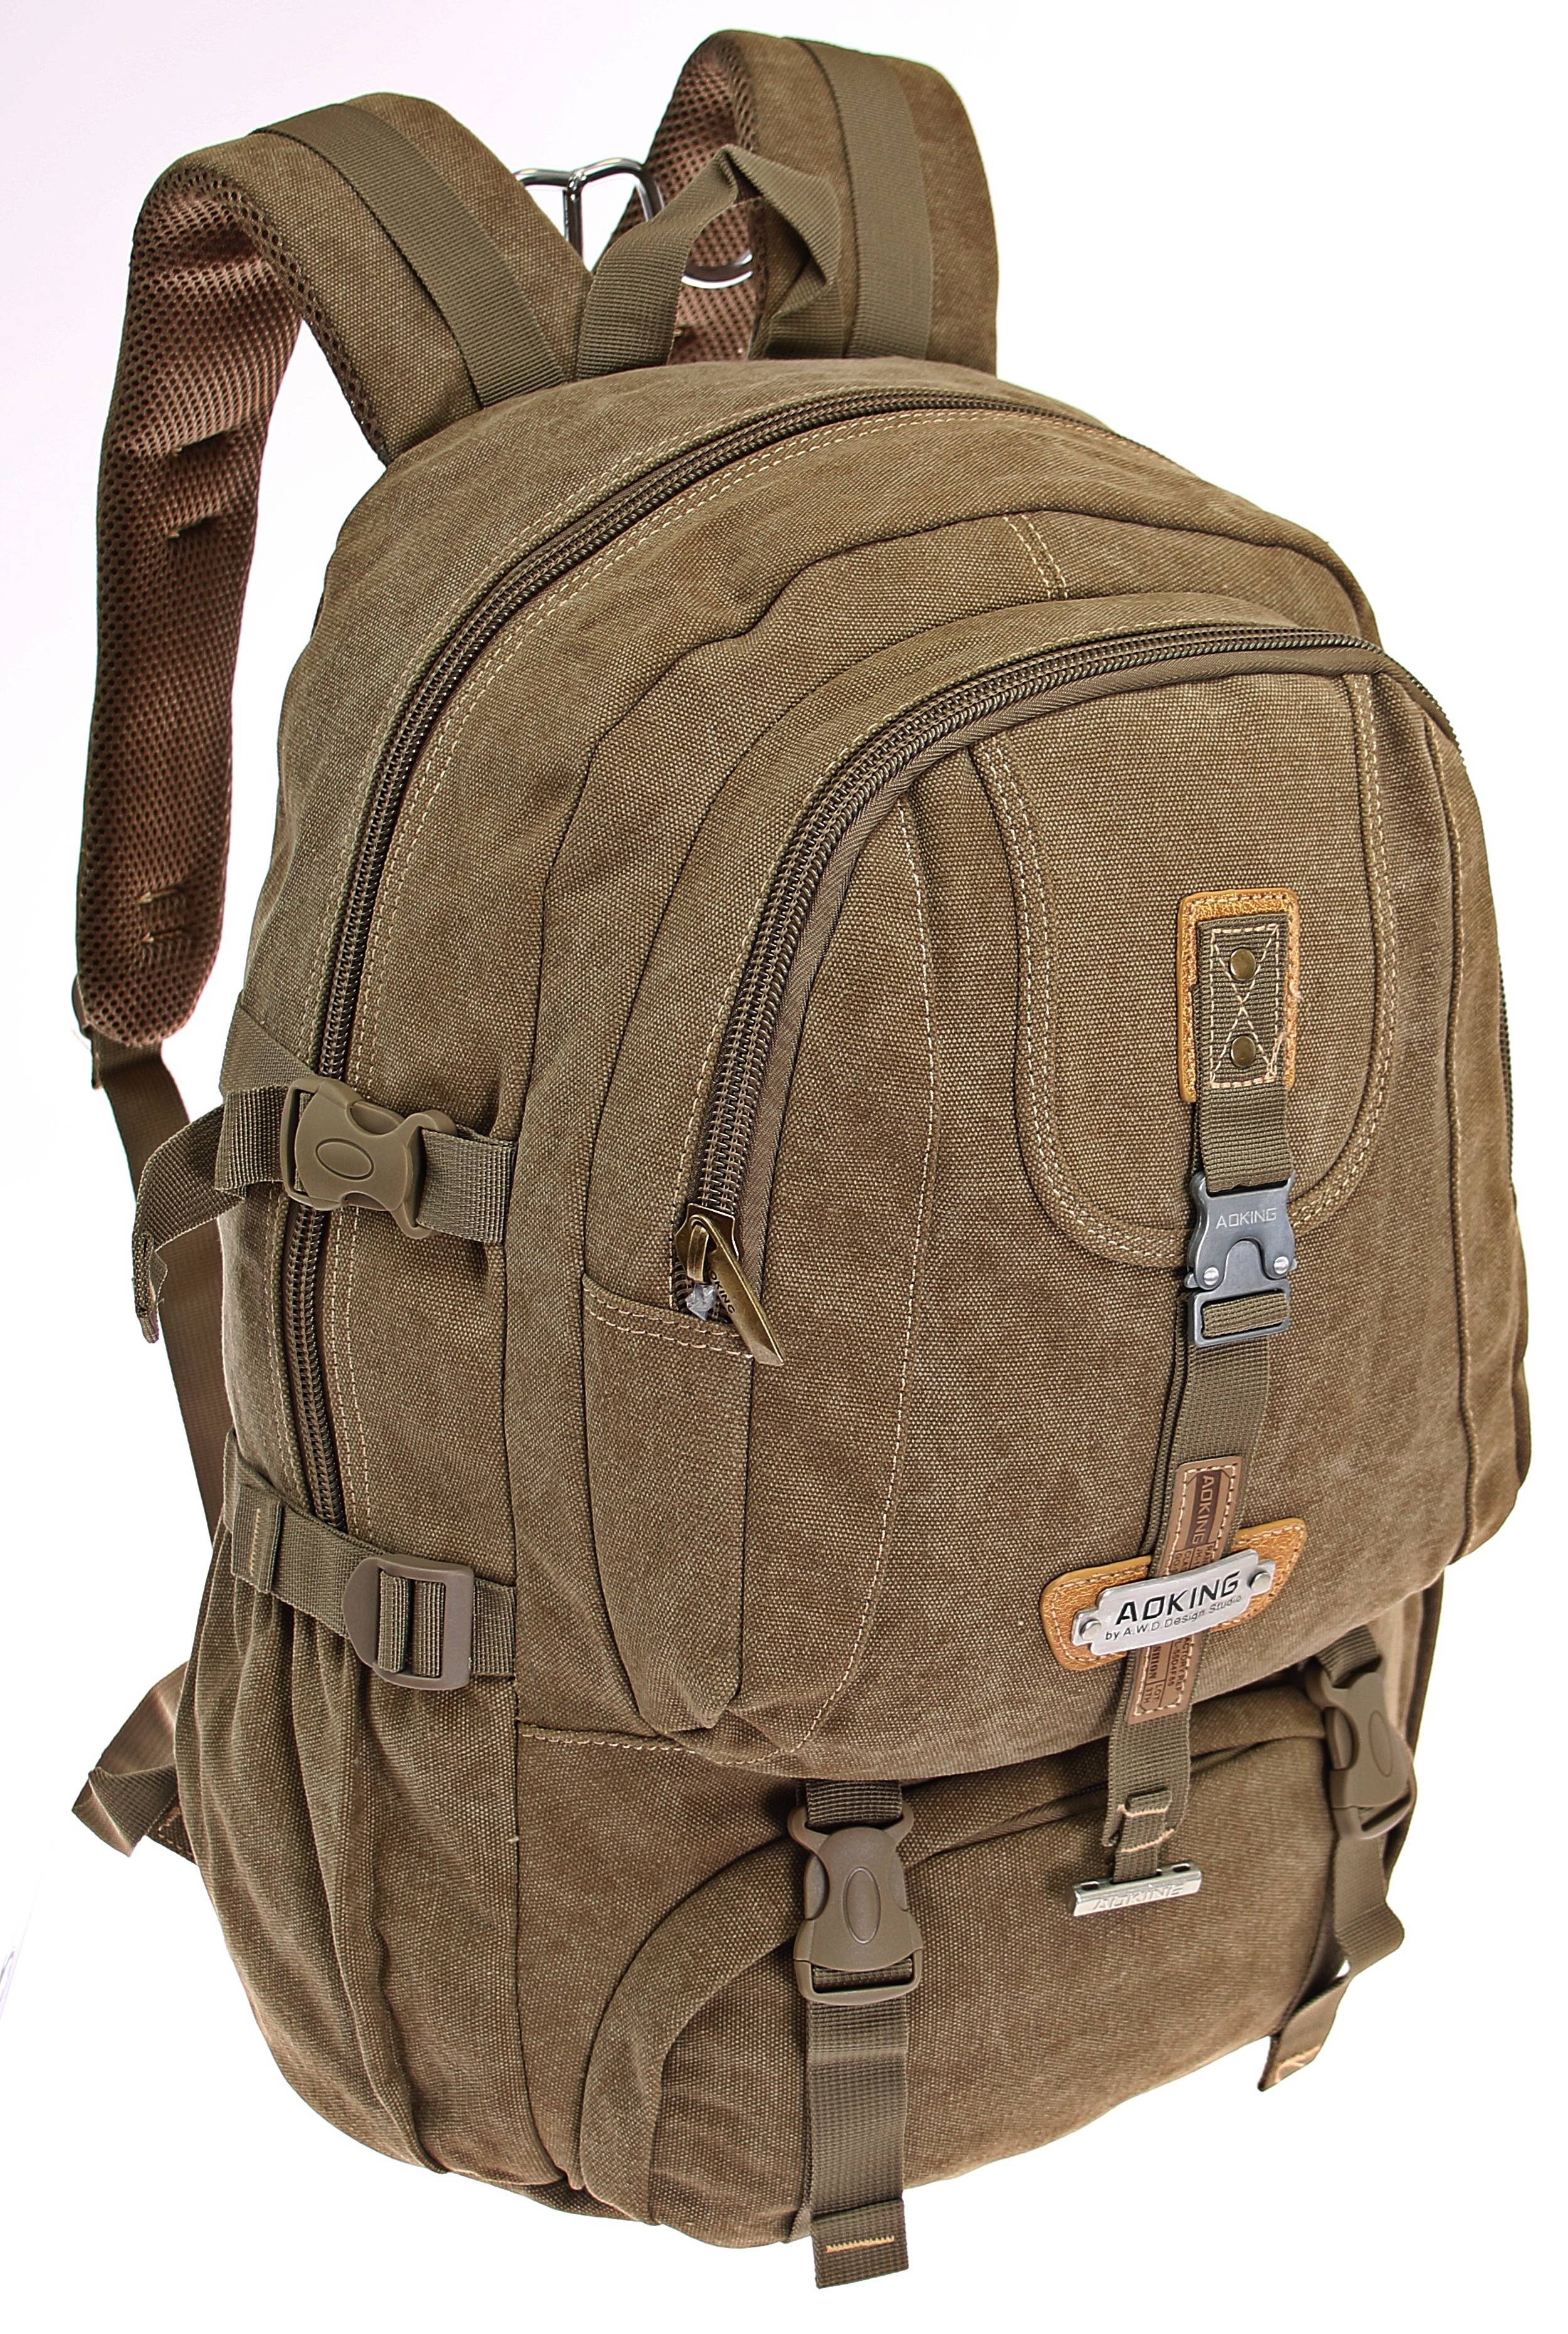 VINTAGE Herren Canvas Rucksack Tasche Reisetasche Backpack Schulrucksack 30L 